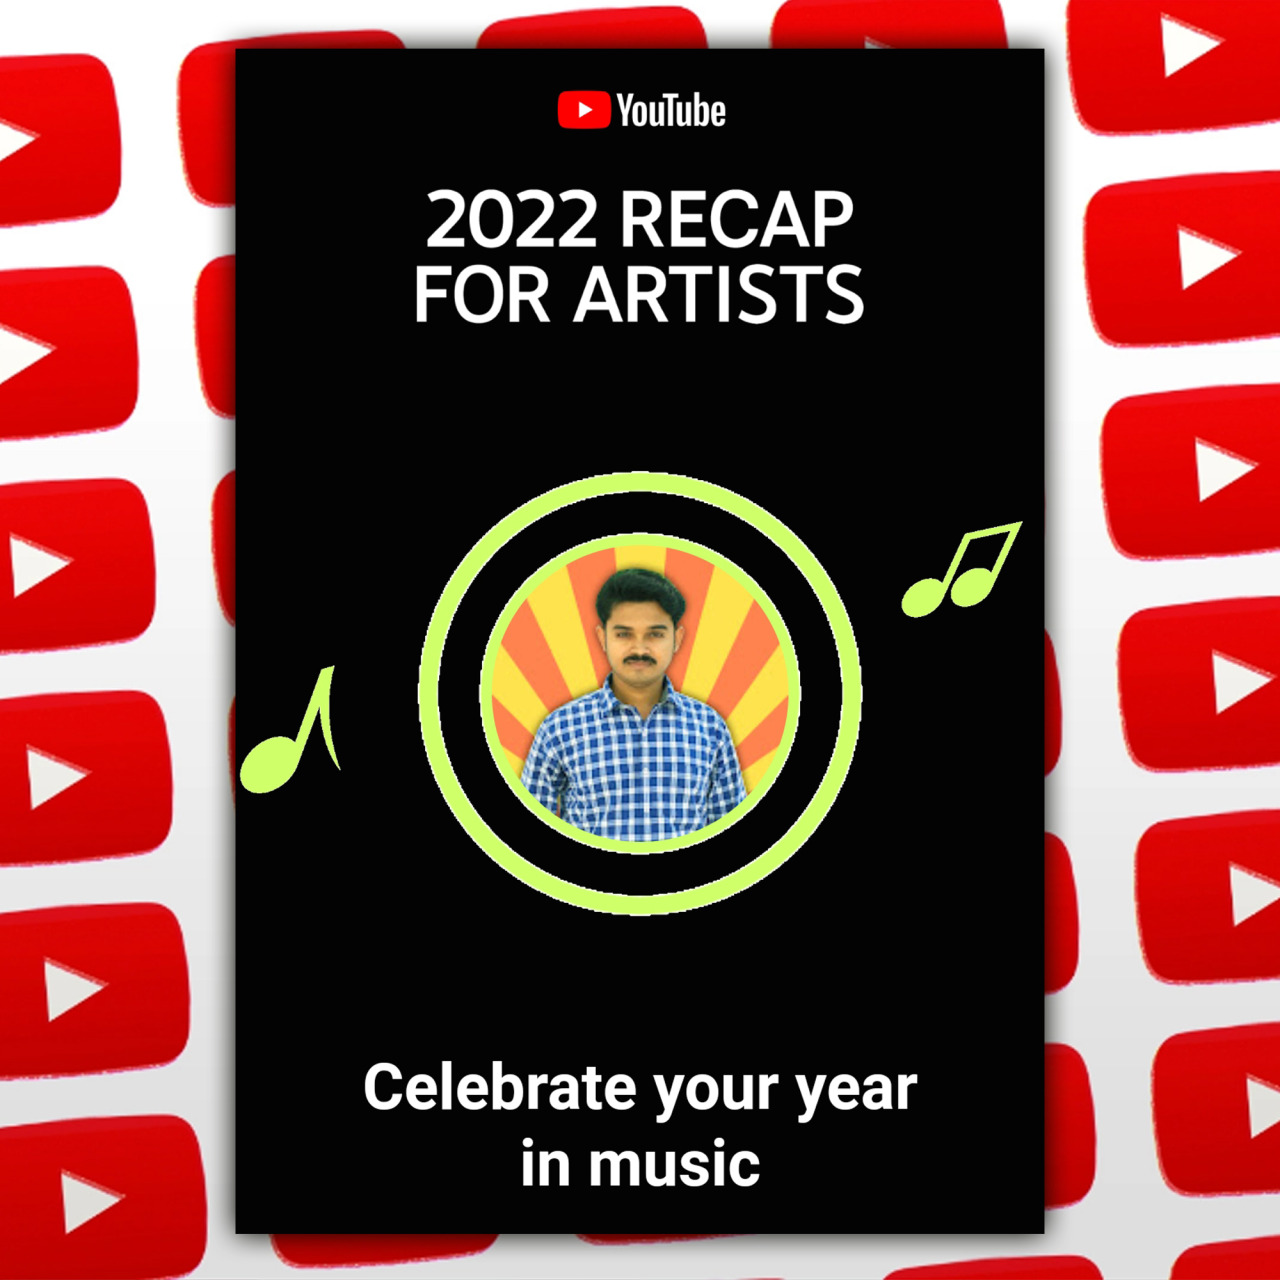 2022 Recap
#YouTubeMusicRecap
https://www.youtube.com/c/SubhodipSarkar